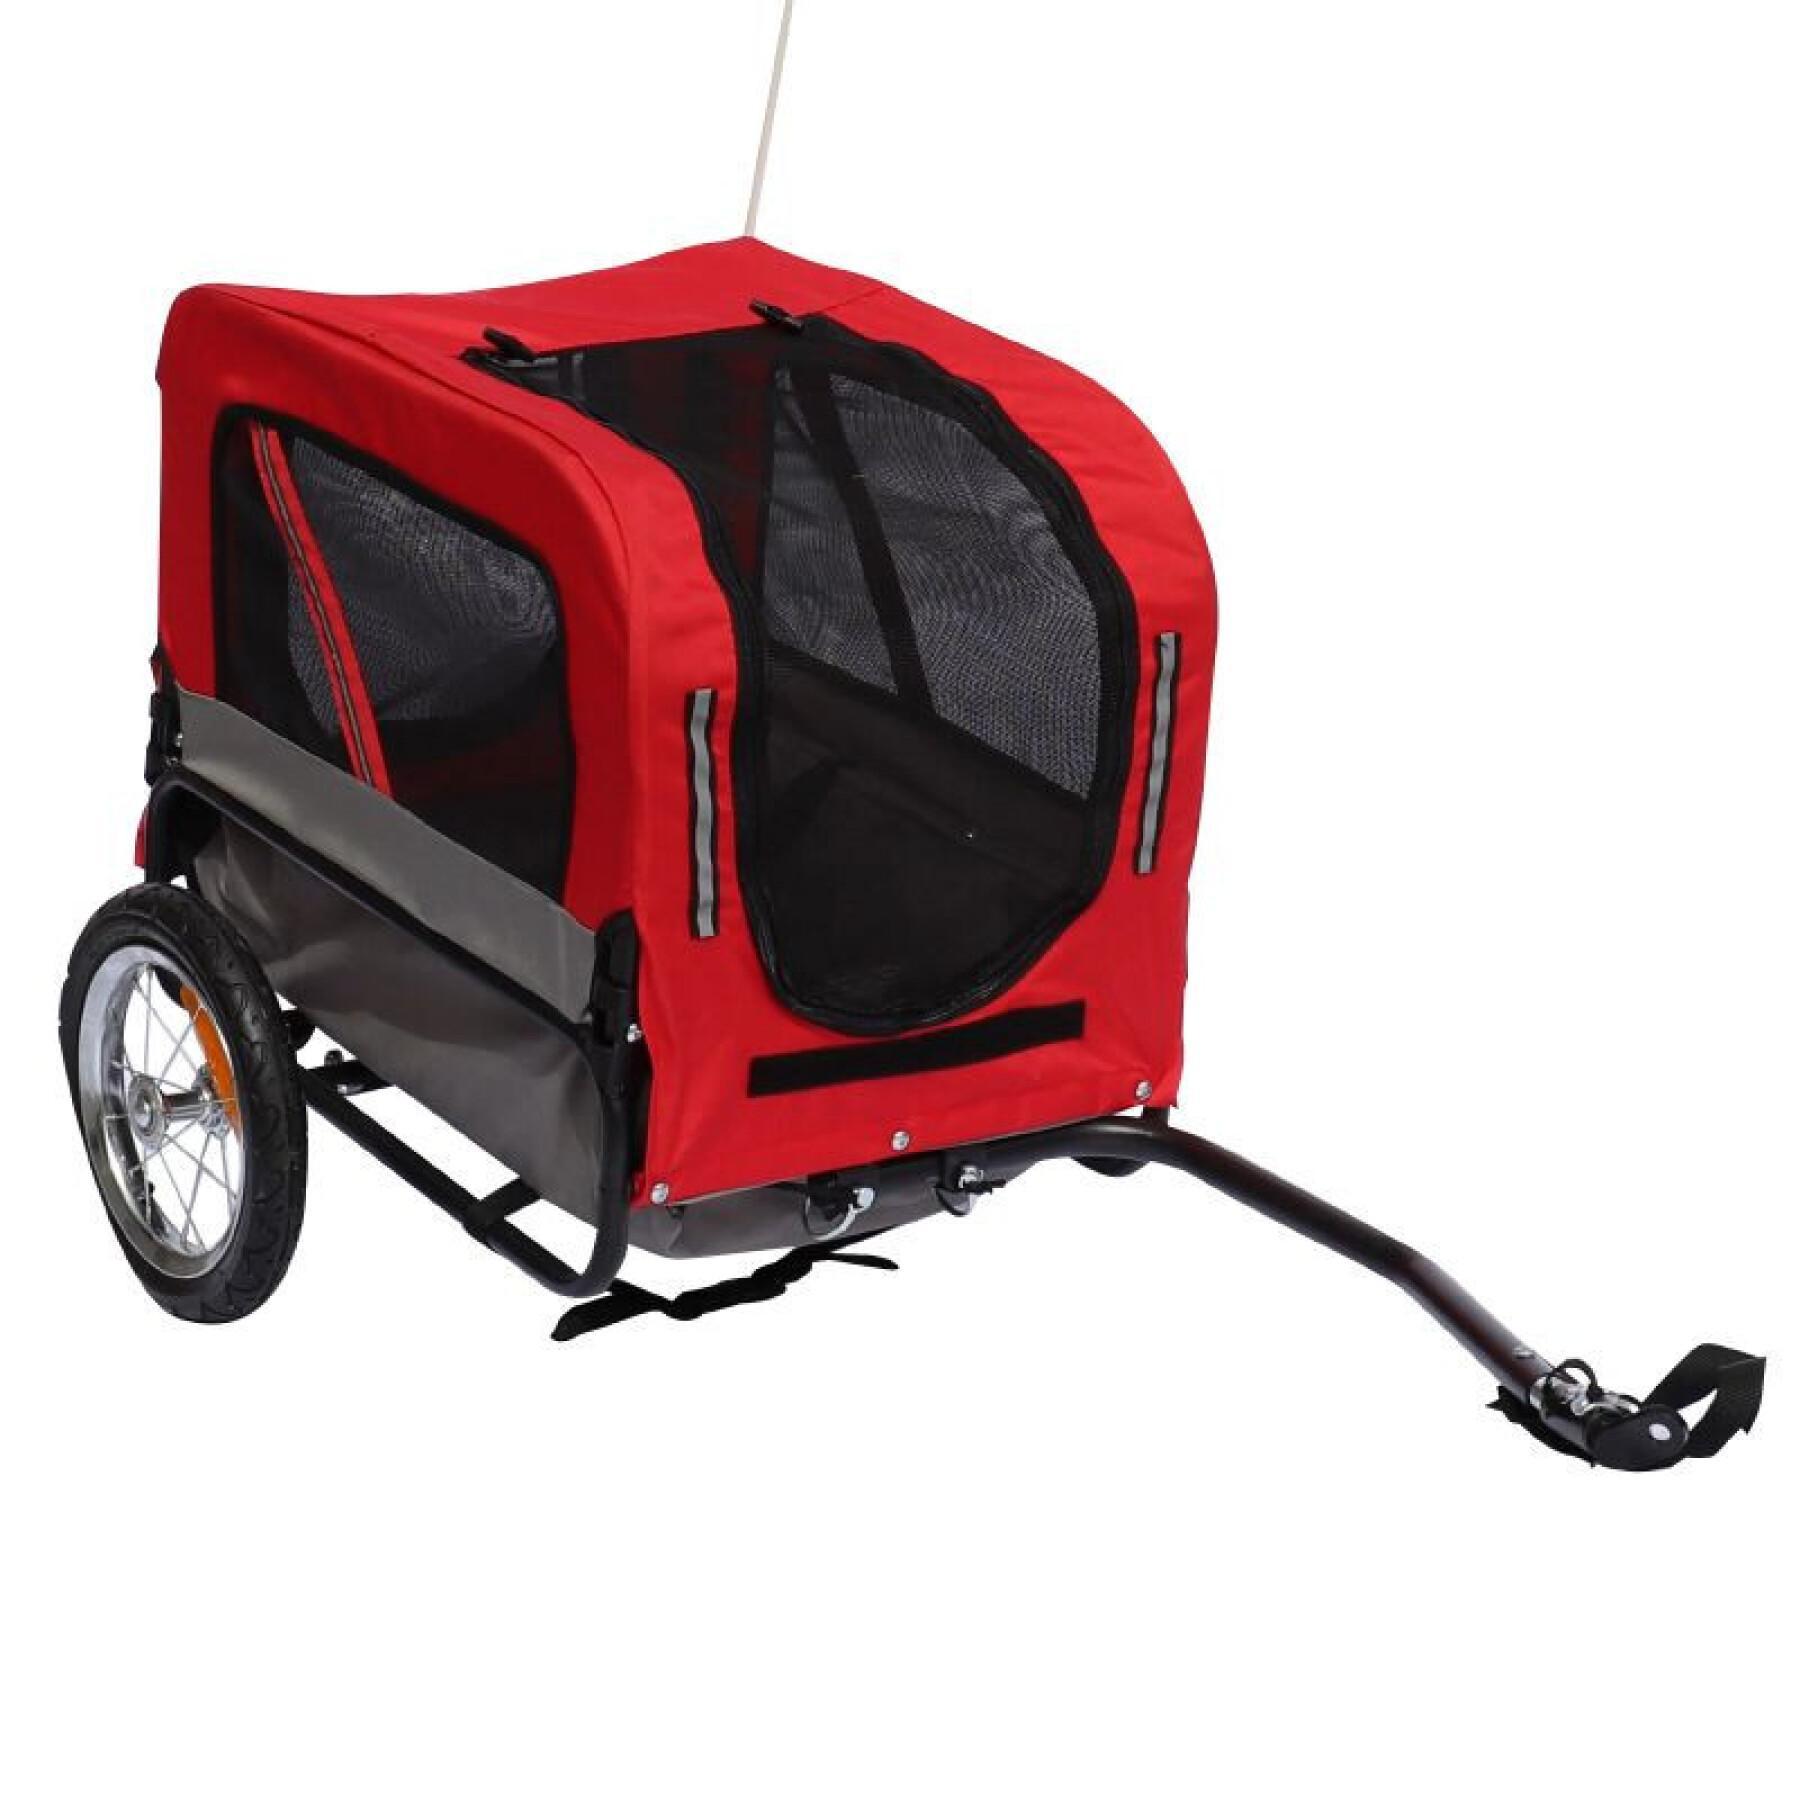 Utility-Anhänger mit Rädern, Radachsenbefestigung hinten - für den Transport von Hunden und Gepäck - 2 Öffnungen (vorne+hinten) + zusätzlicher Arm P2R Maxi